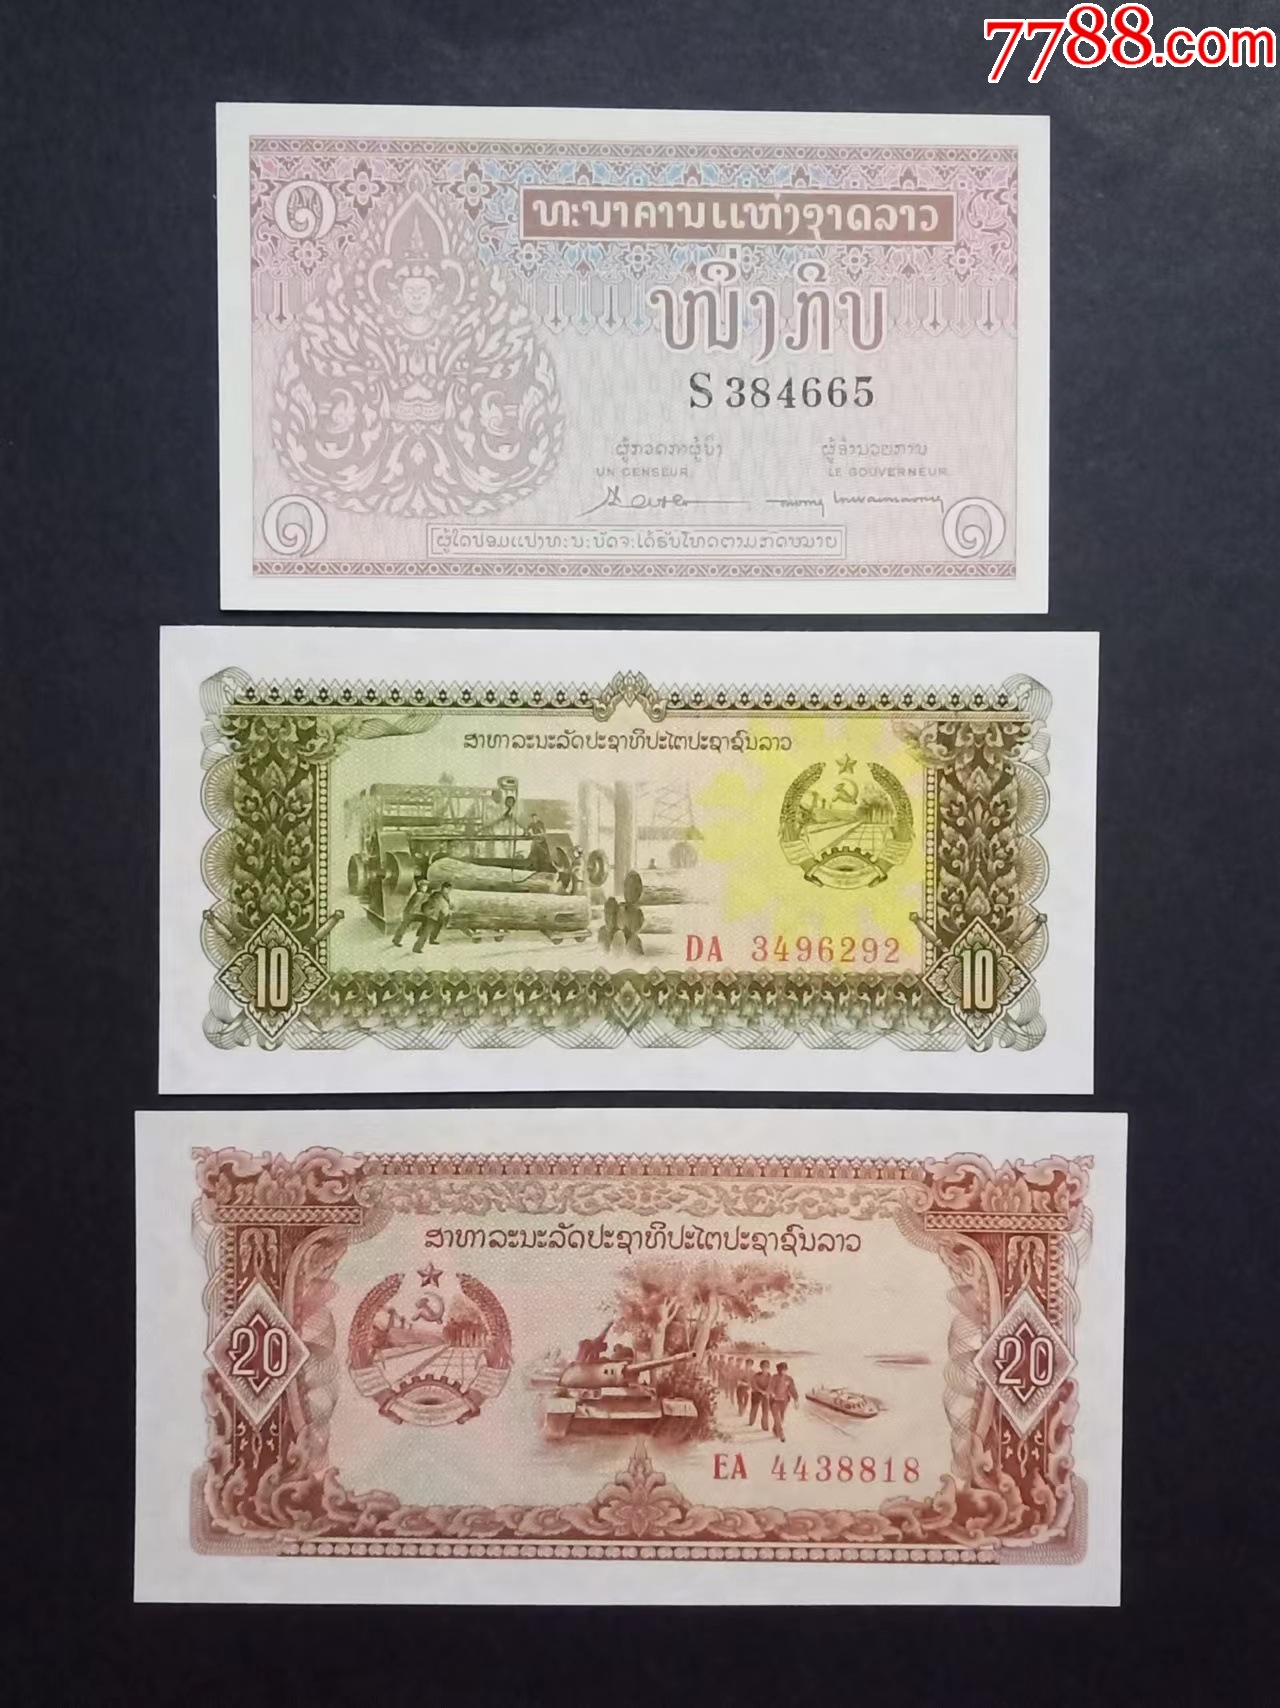 法国殖民地东方汇理银行5元1949签名11新老挝文法属****越南（罕见版别）-价格:200元-se87489895-外国钱币-零售-7788 ...